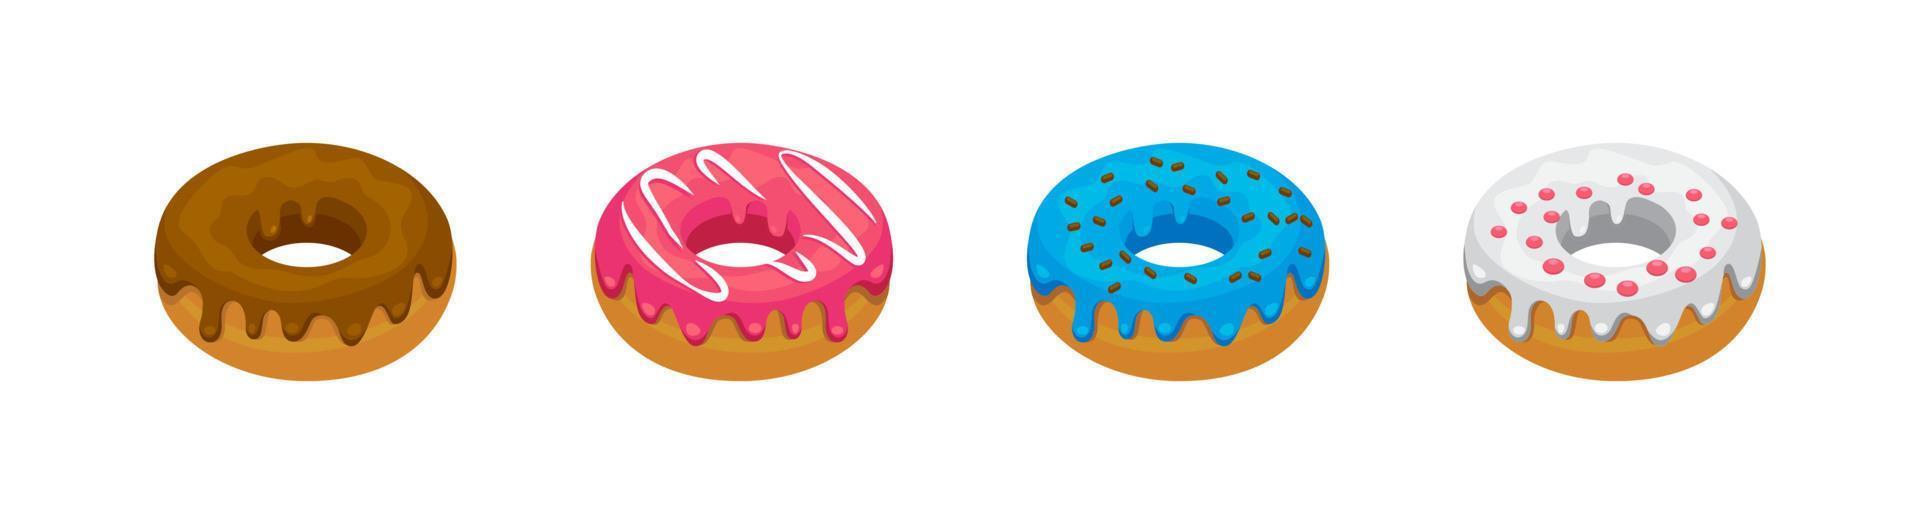 Donut- oder Donut-Icon-Set von 4, Designelement geeignet für Websites, Printdesign oder App vektor